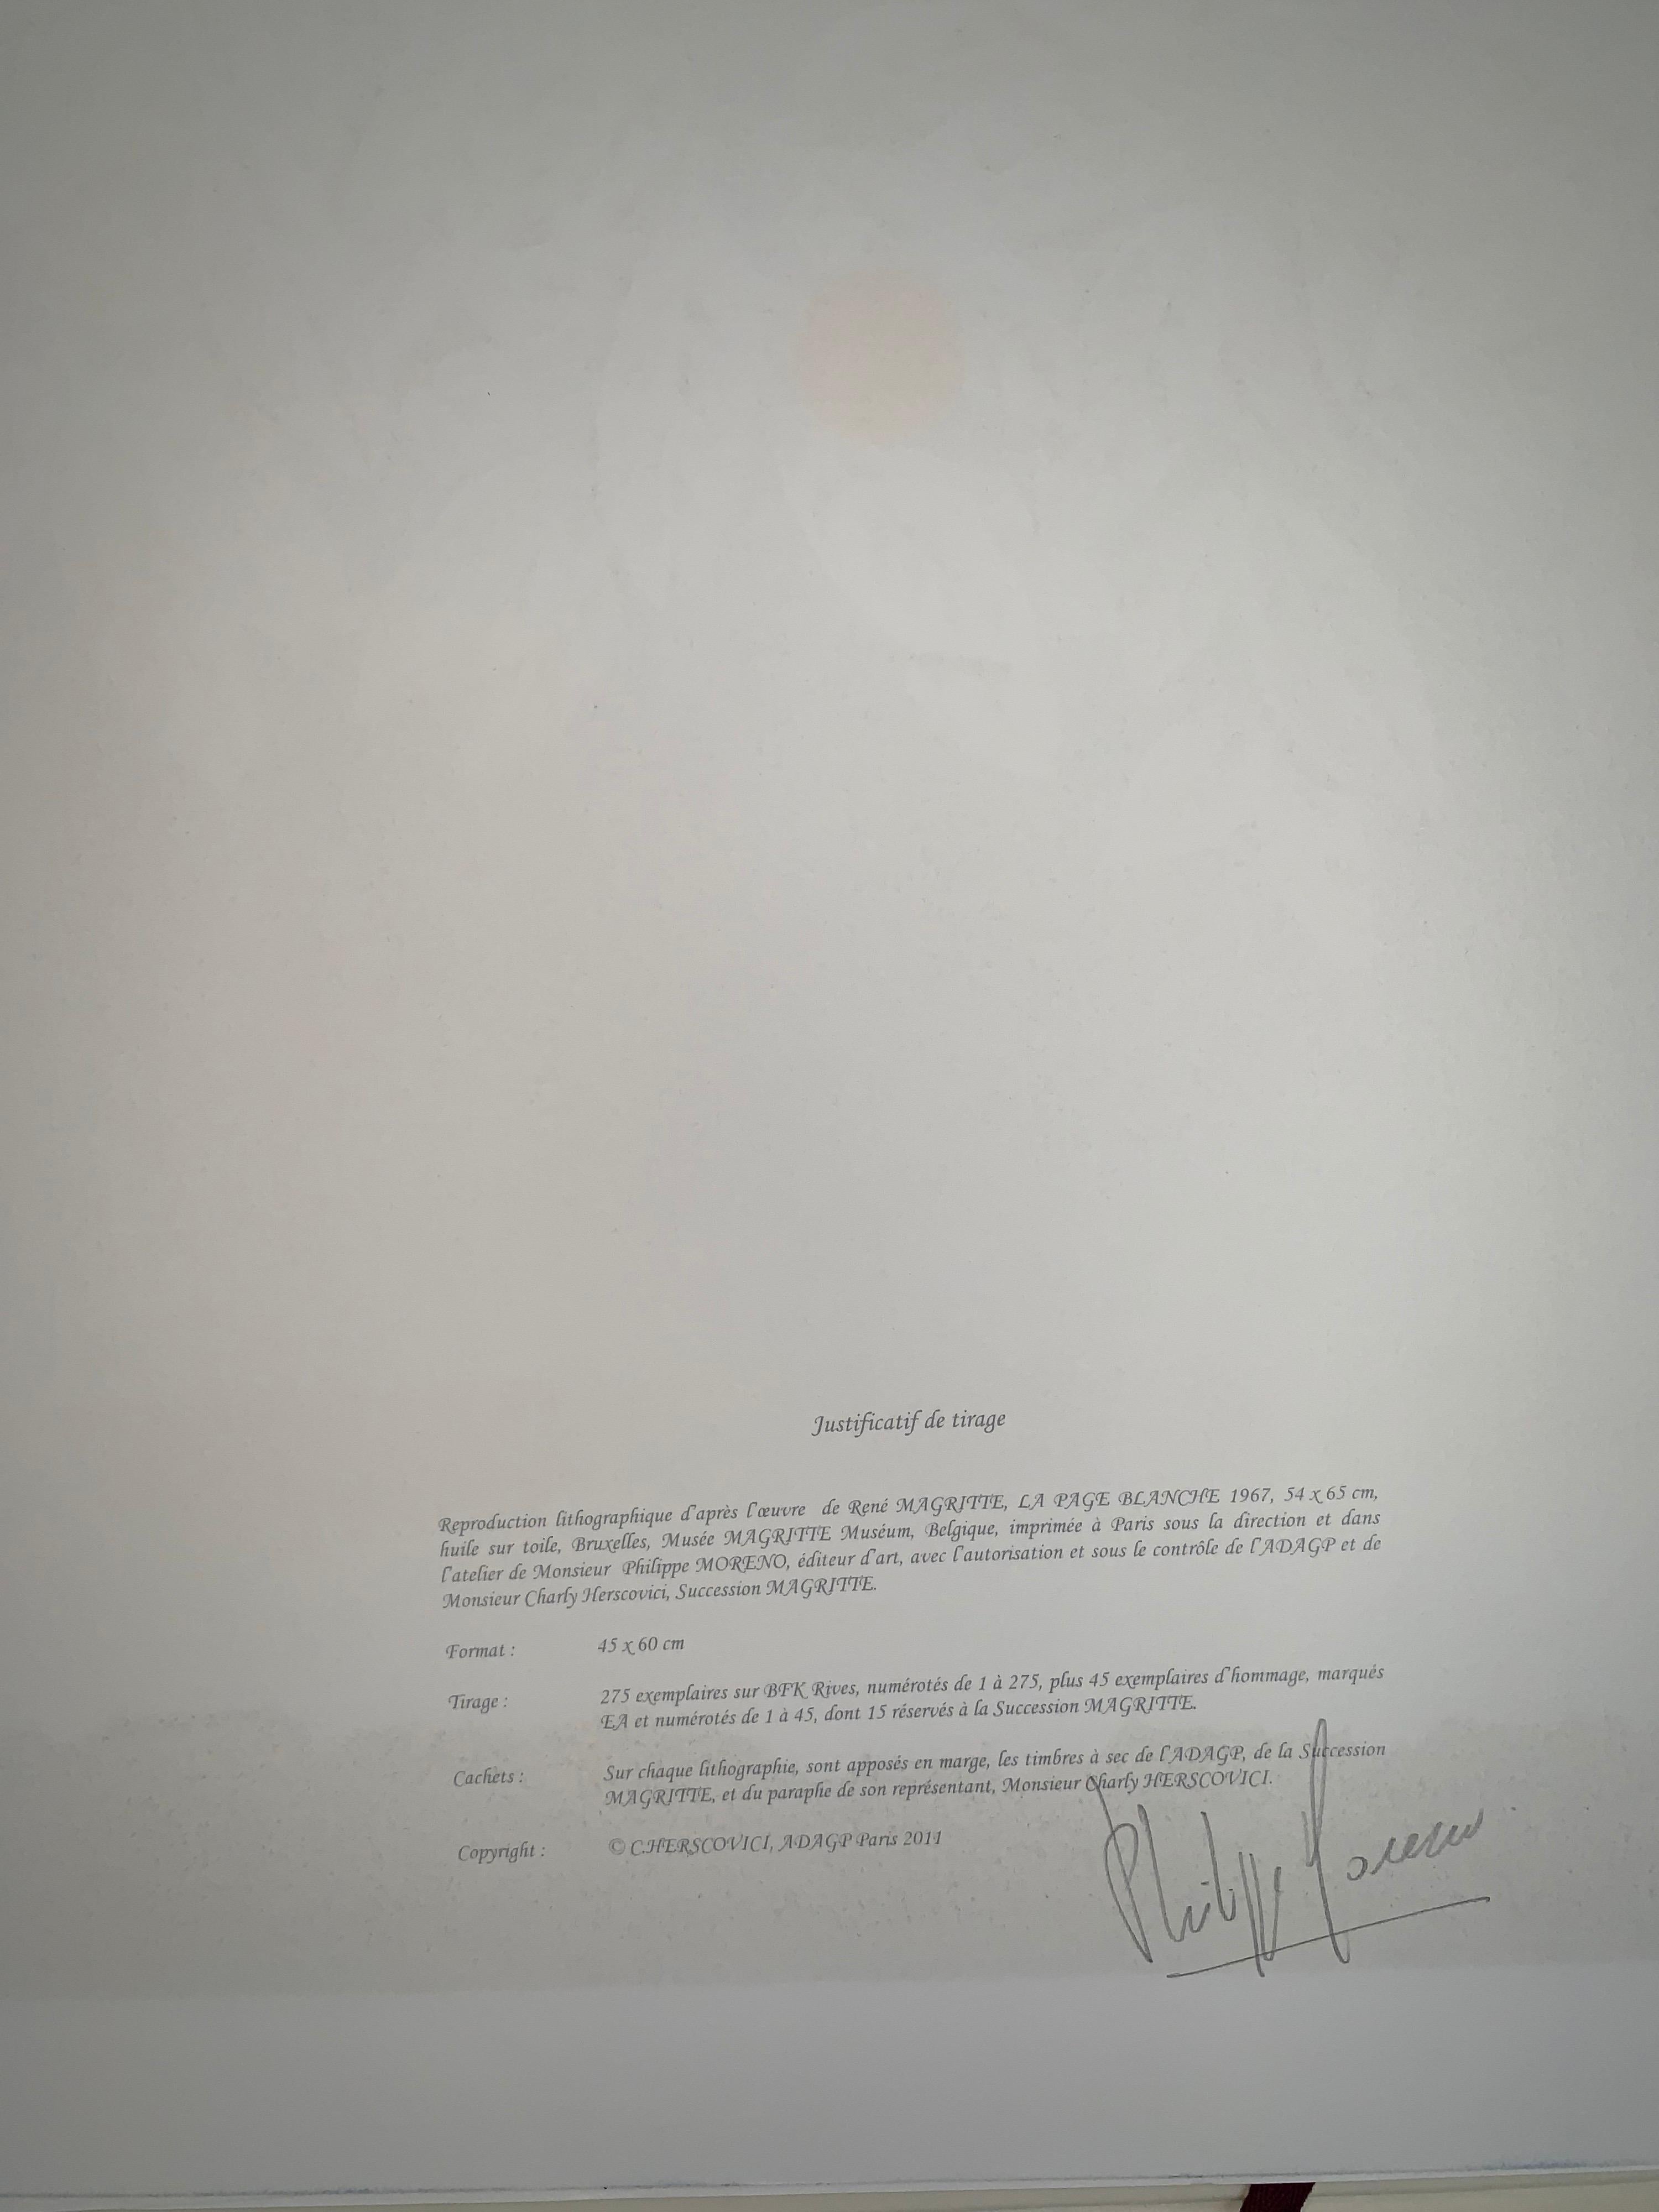 Nummerierung: 138/275
Farblithographie nach dem Öl auf Leinwand von 1967 von René Magritte, gedruckte Signatur von Magritte und nummeriert aus der Auflage von 275. 
Die Lithographie trägt die Trockenstempel der Magritte-Stiftung und der ADAGP und